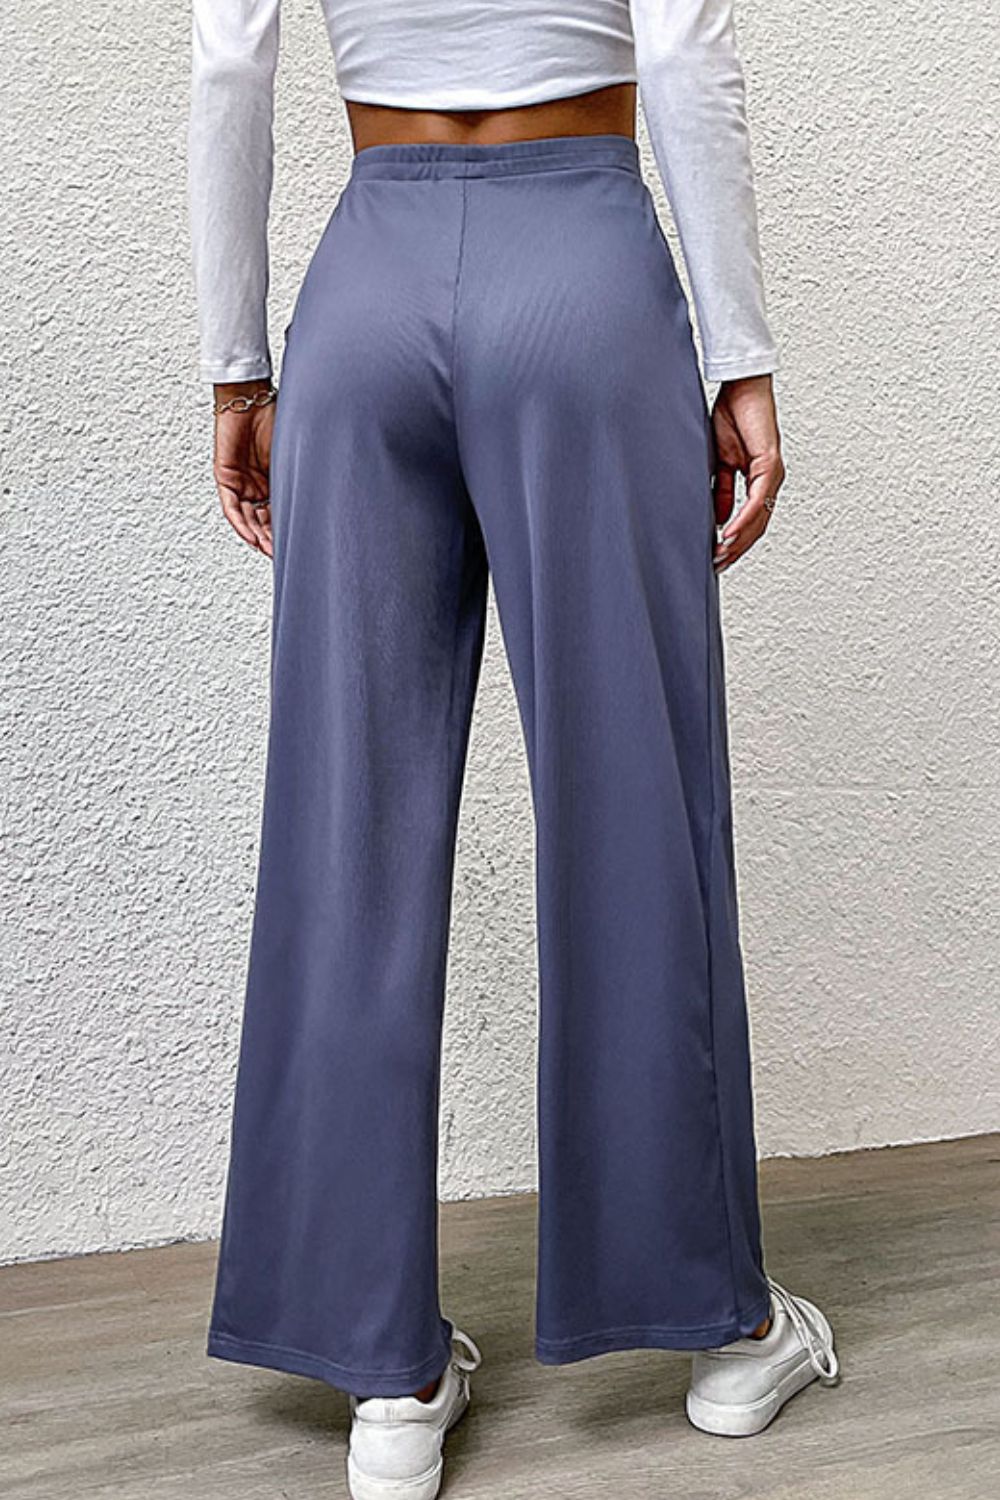 Pantalones anchos con detalle plisado y bolsillos